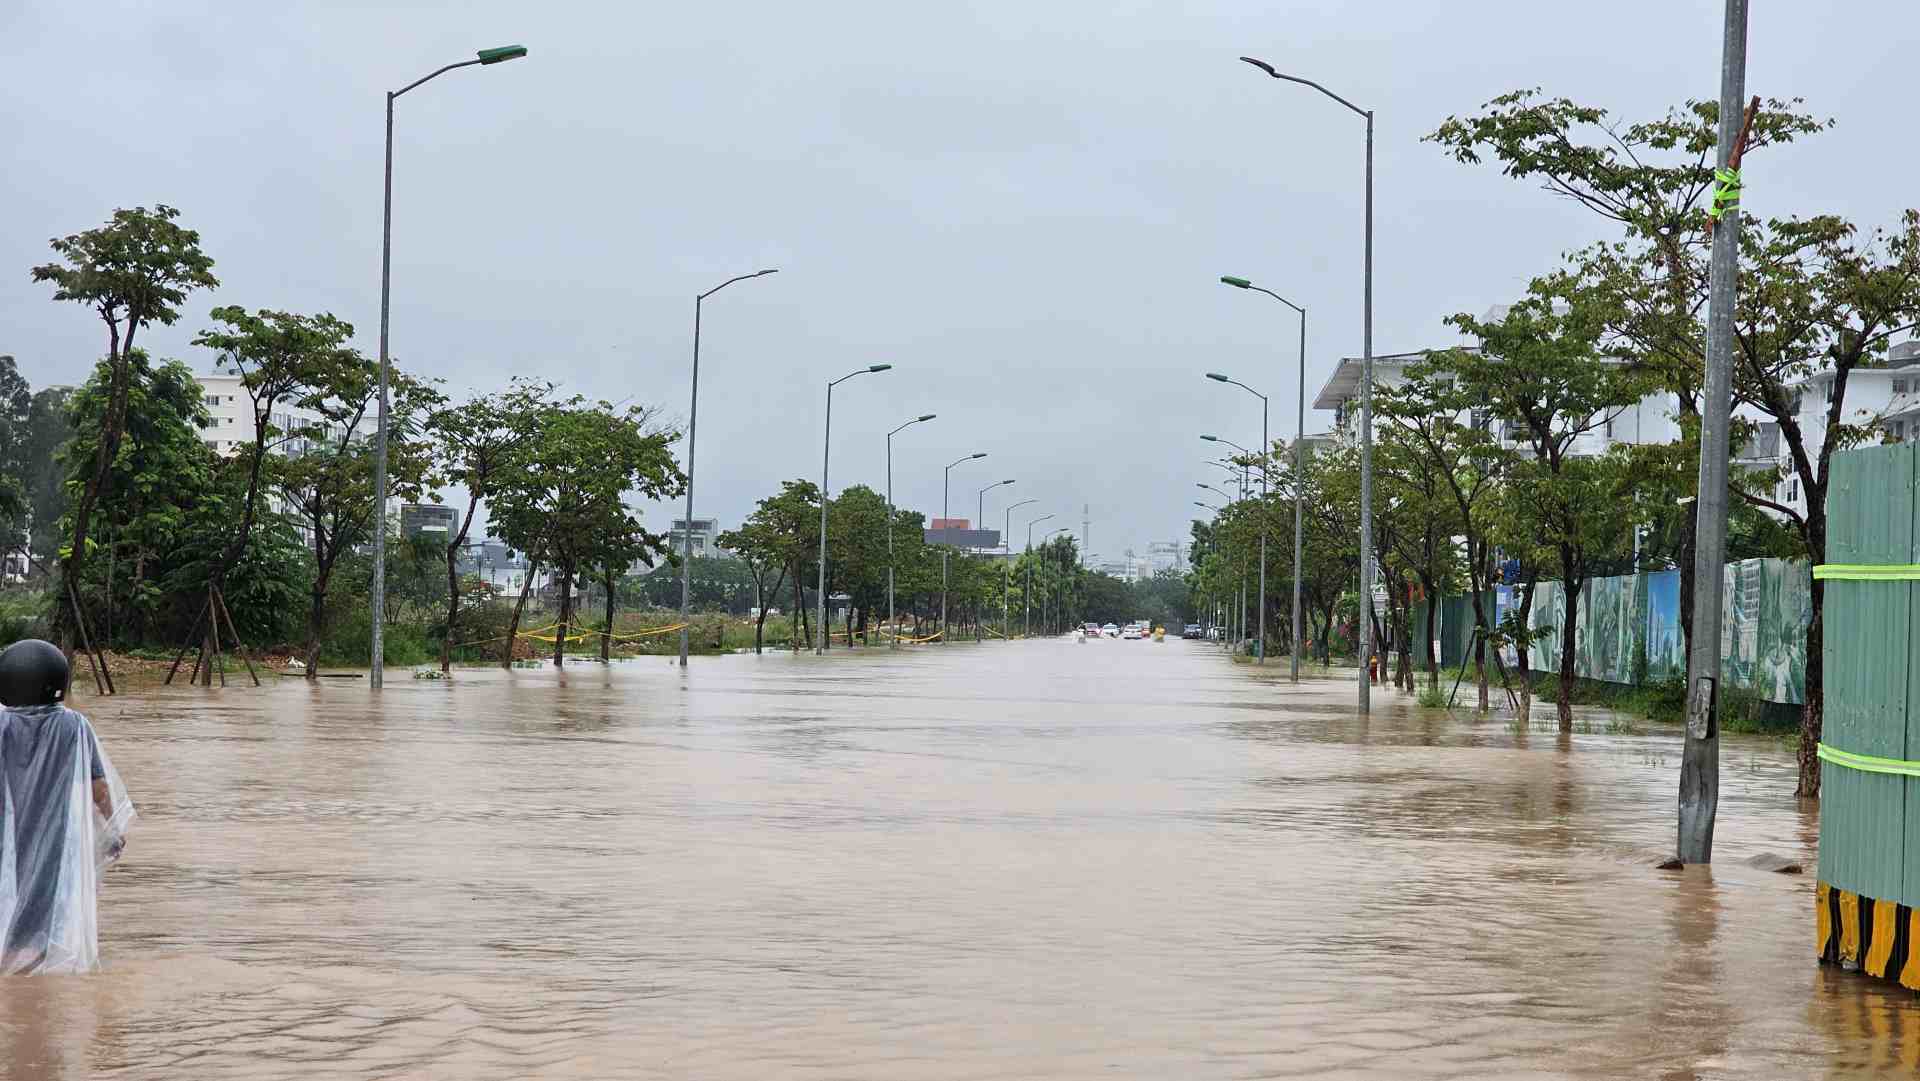 Ghi nhận của Lao Động, tại một số tuyến đường ở TP. Huế, nước ngập từ 0,3-0,5cm. Nguyên nhân do lượng mưa lớn, trong khi nước thoát chậm. 